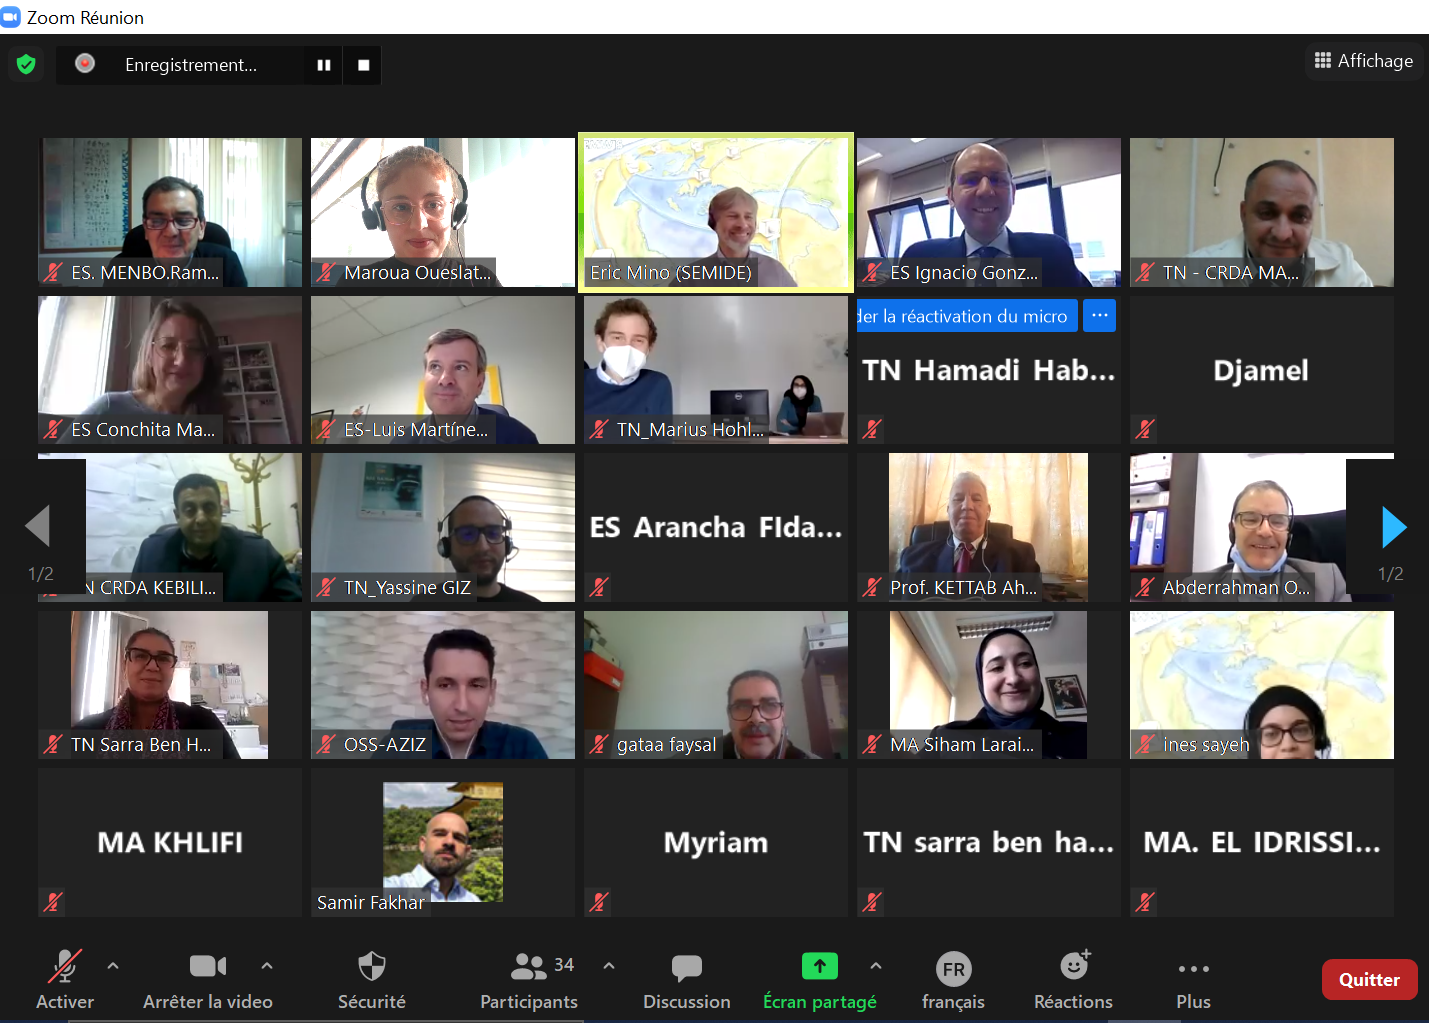 Captura de pantalla donde aparecen los participantes de la videoconferencia